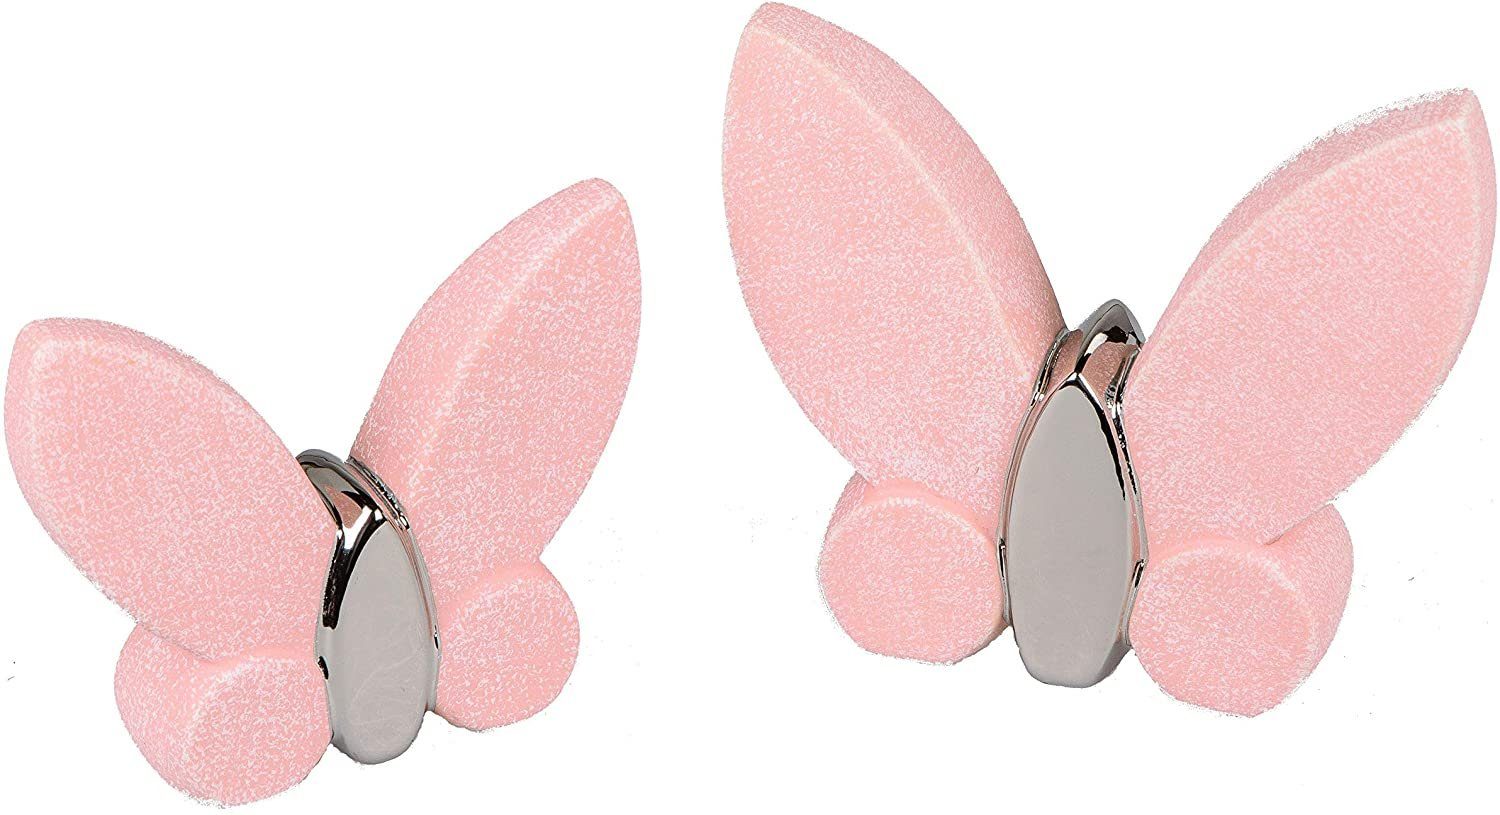 Small-Preis Dekofigur Schmetterling stehend 13cm und 16cm im 2er Set Pastellfarben rosa (2er Set)